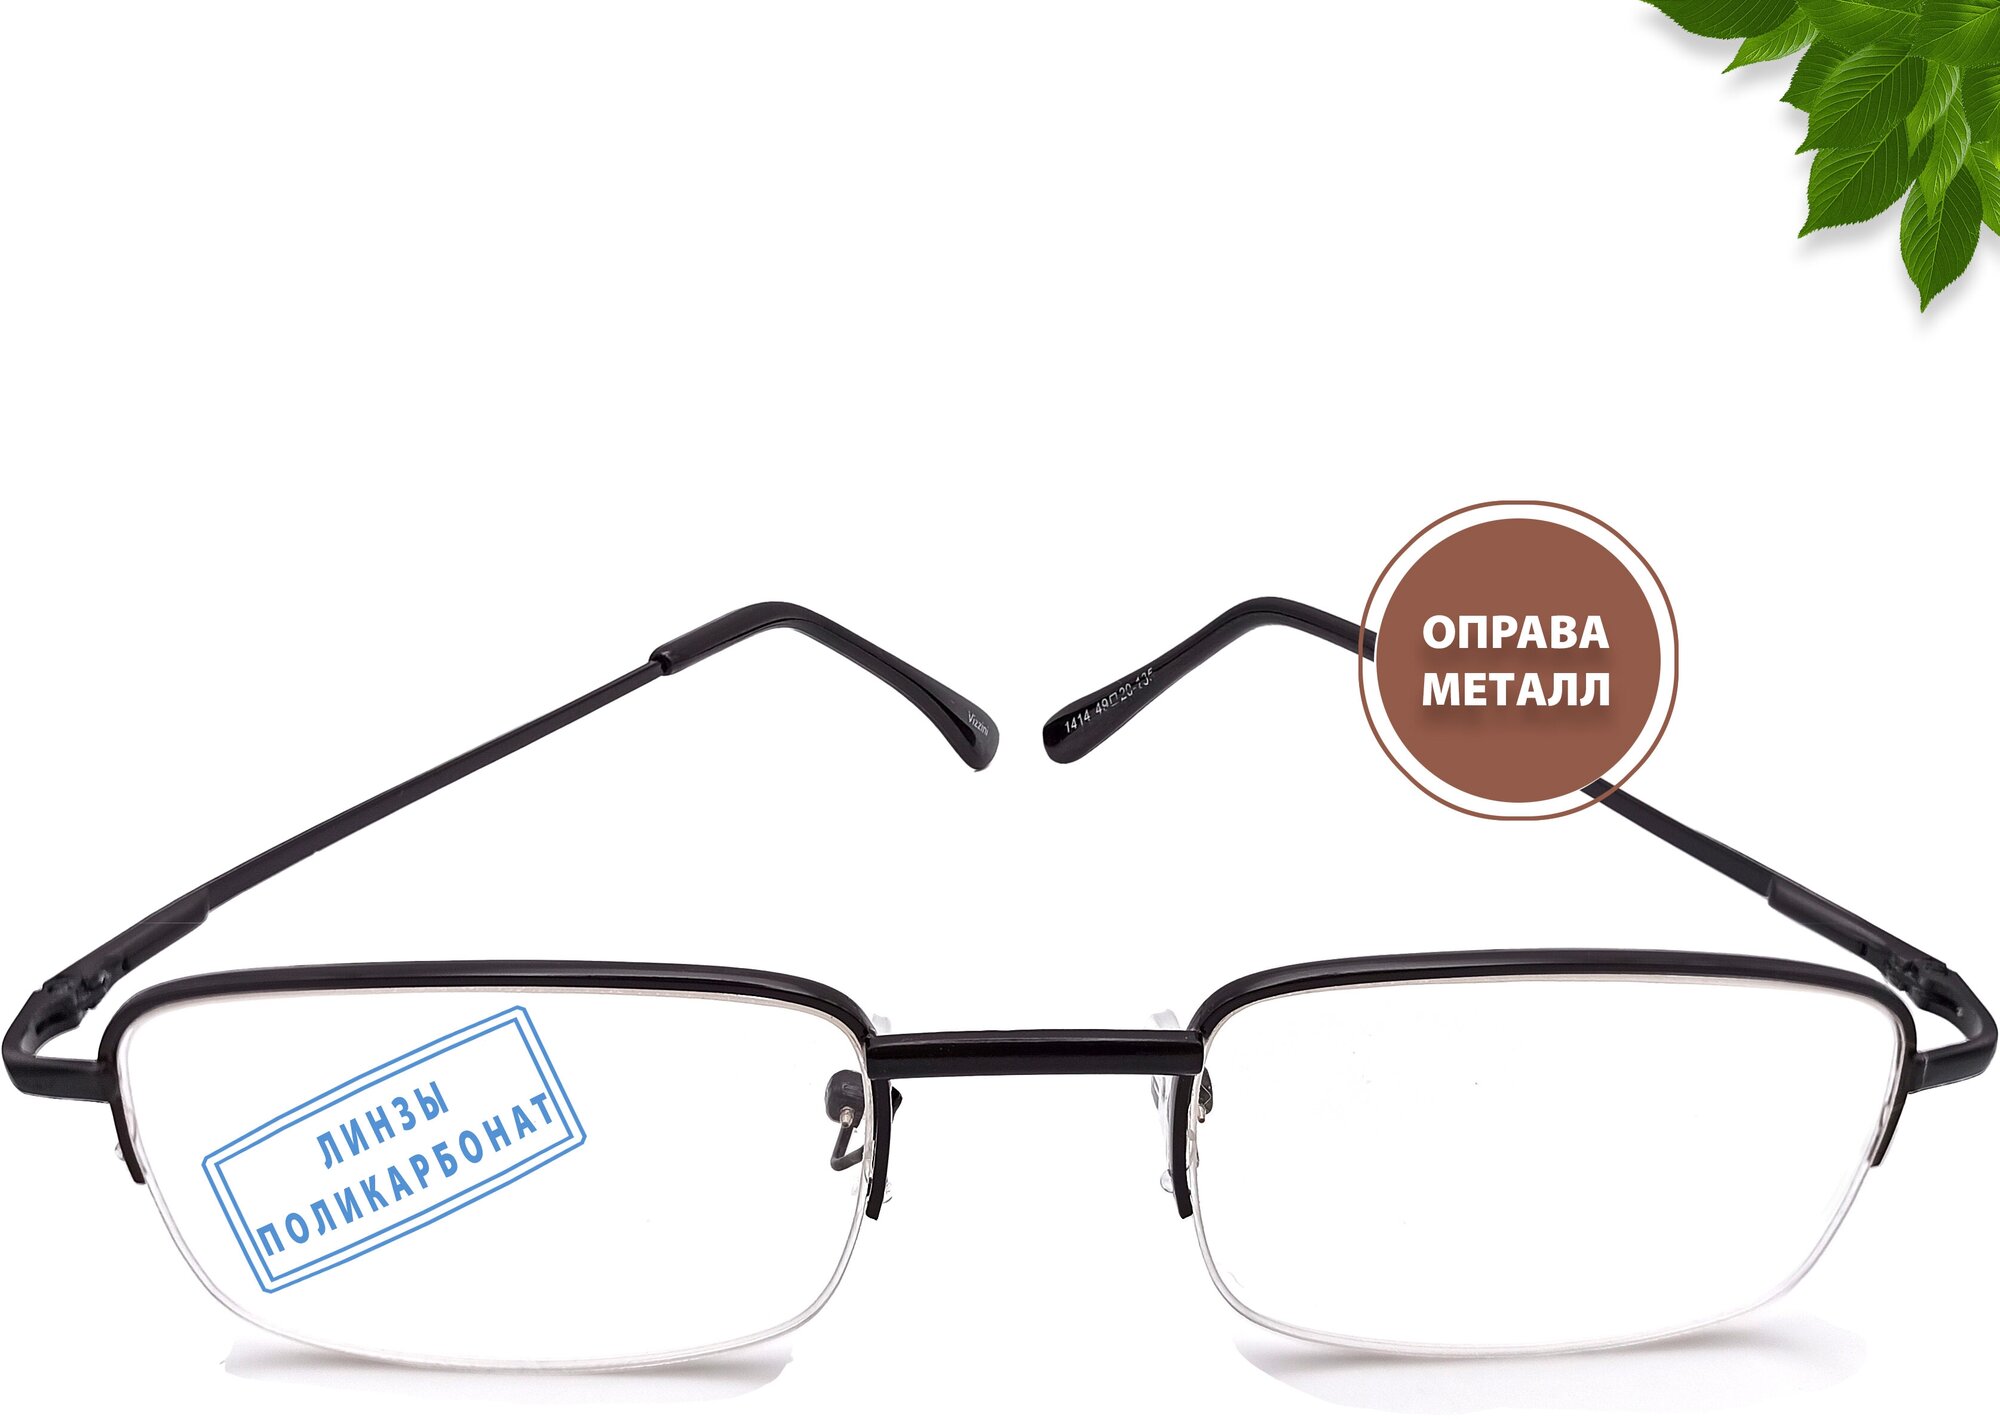 Готовые очки для зрения с диоптриями +2.25 для коррекции дальнозоркости в металлической полуободковой оправе